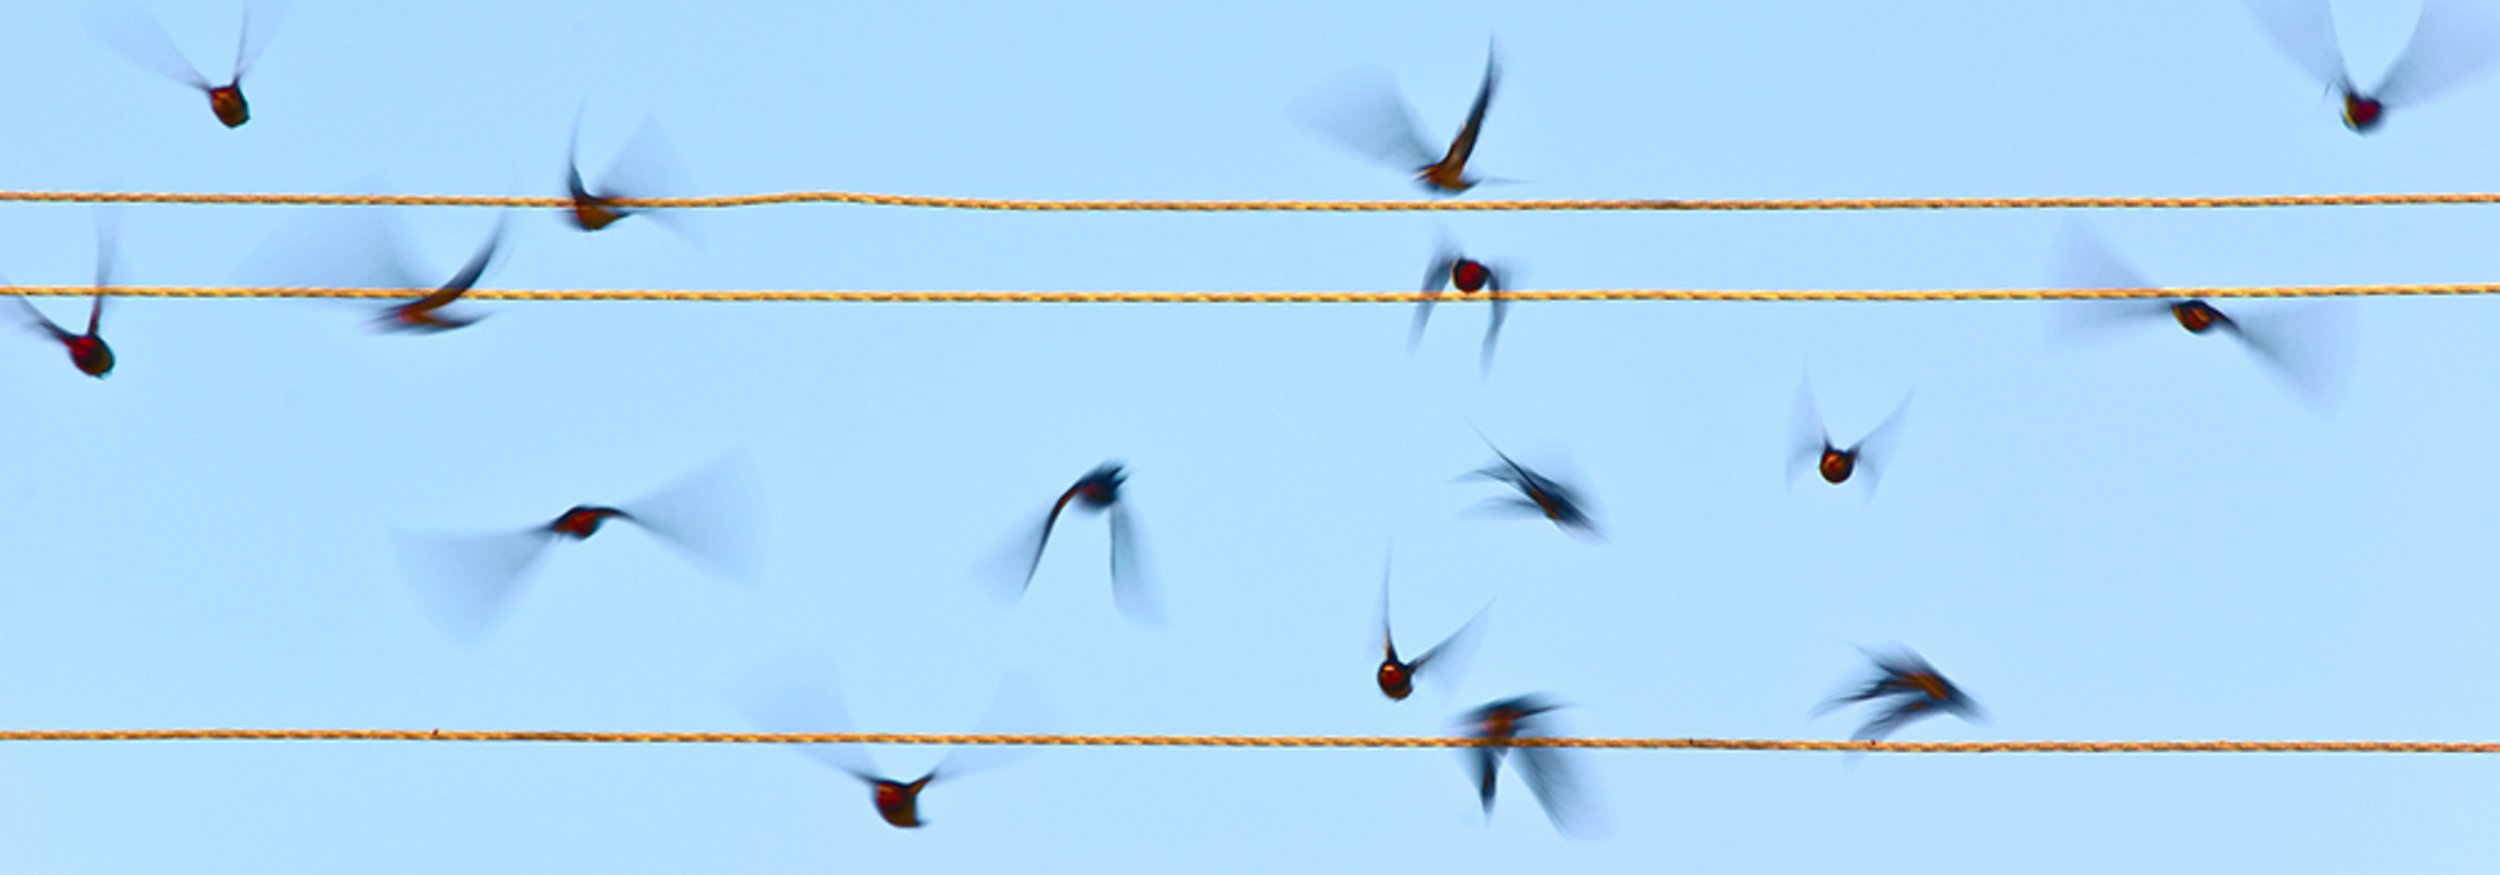 Titelbild der Startseite, fliegende Vögel